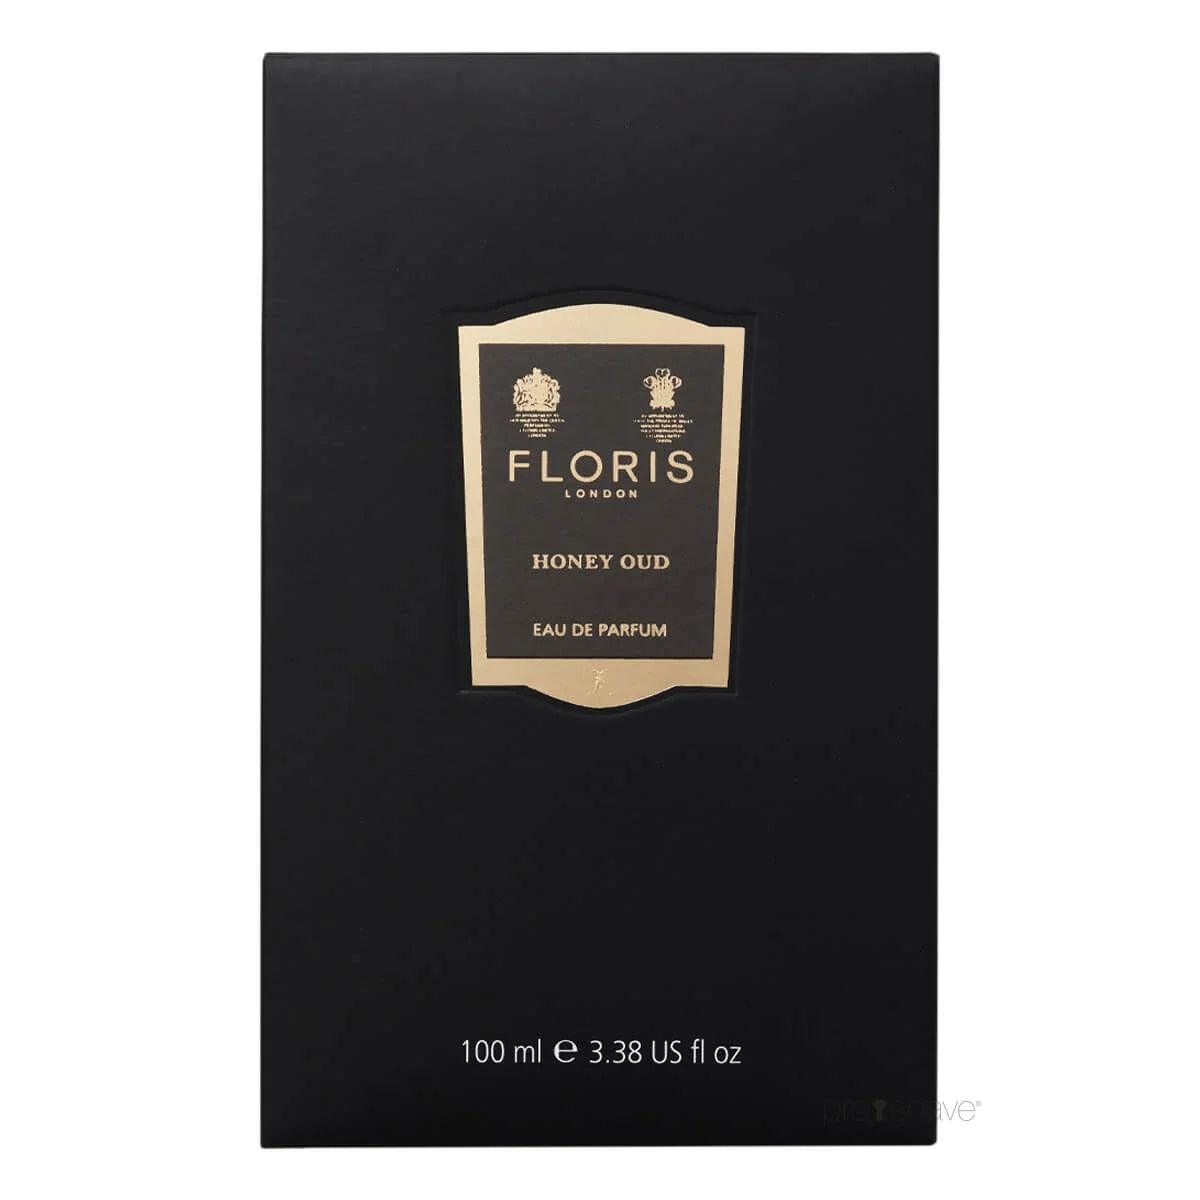 Floris Honey Oud, Eau de Parfum, 10 ml | Parfyme | Floris London | JK SHOP | JK Barber og herre frisør | Lavepriser | Best